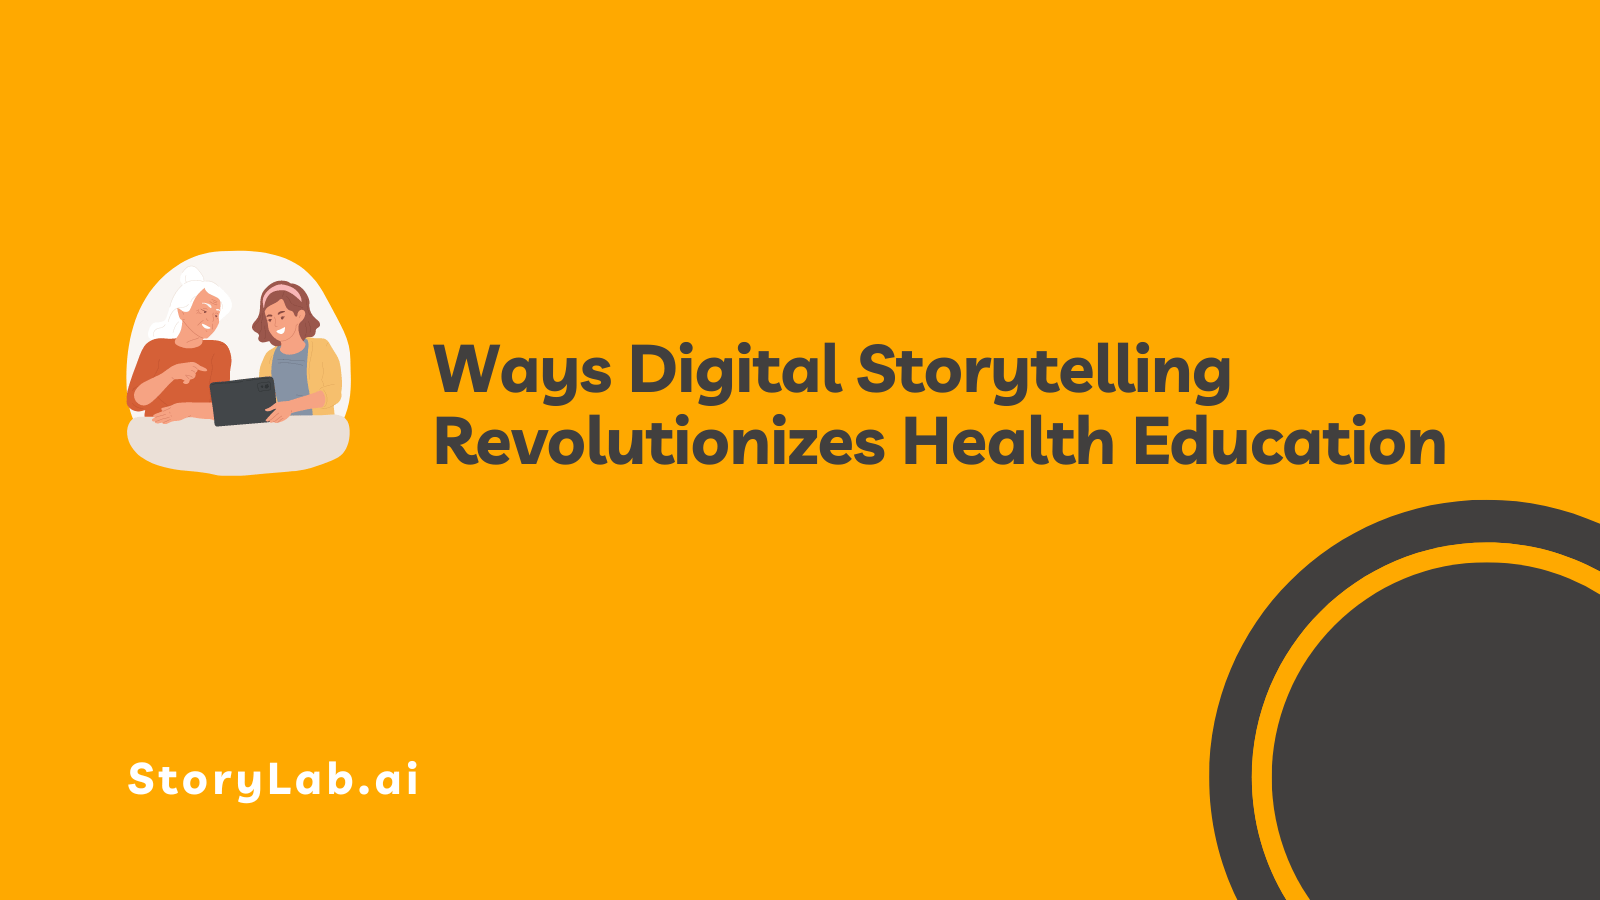 Modi in cui lo storytelling digitale rivoluziona l’educazione sanitaria